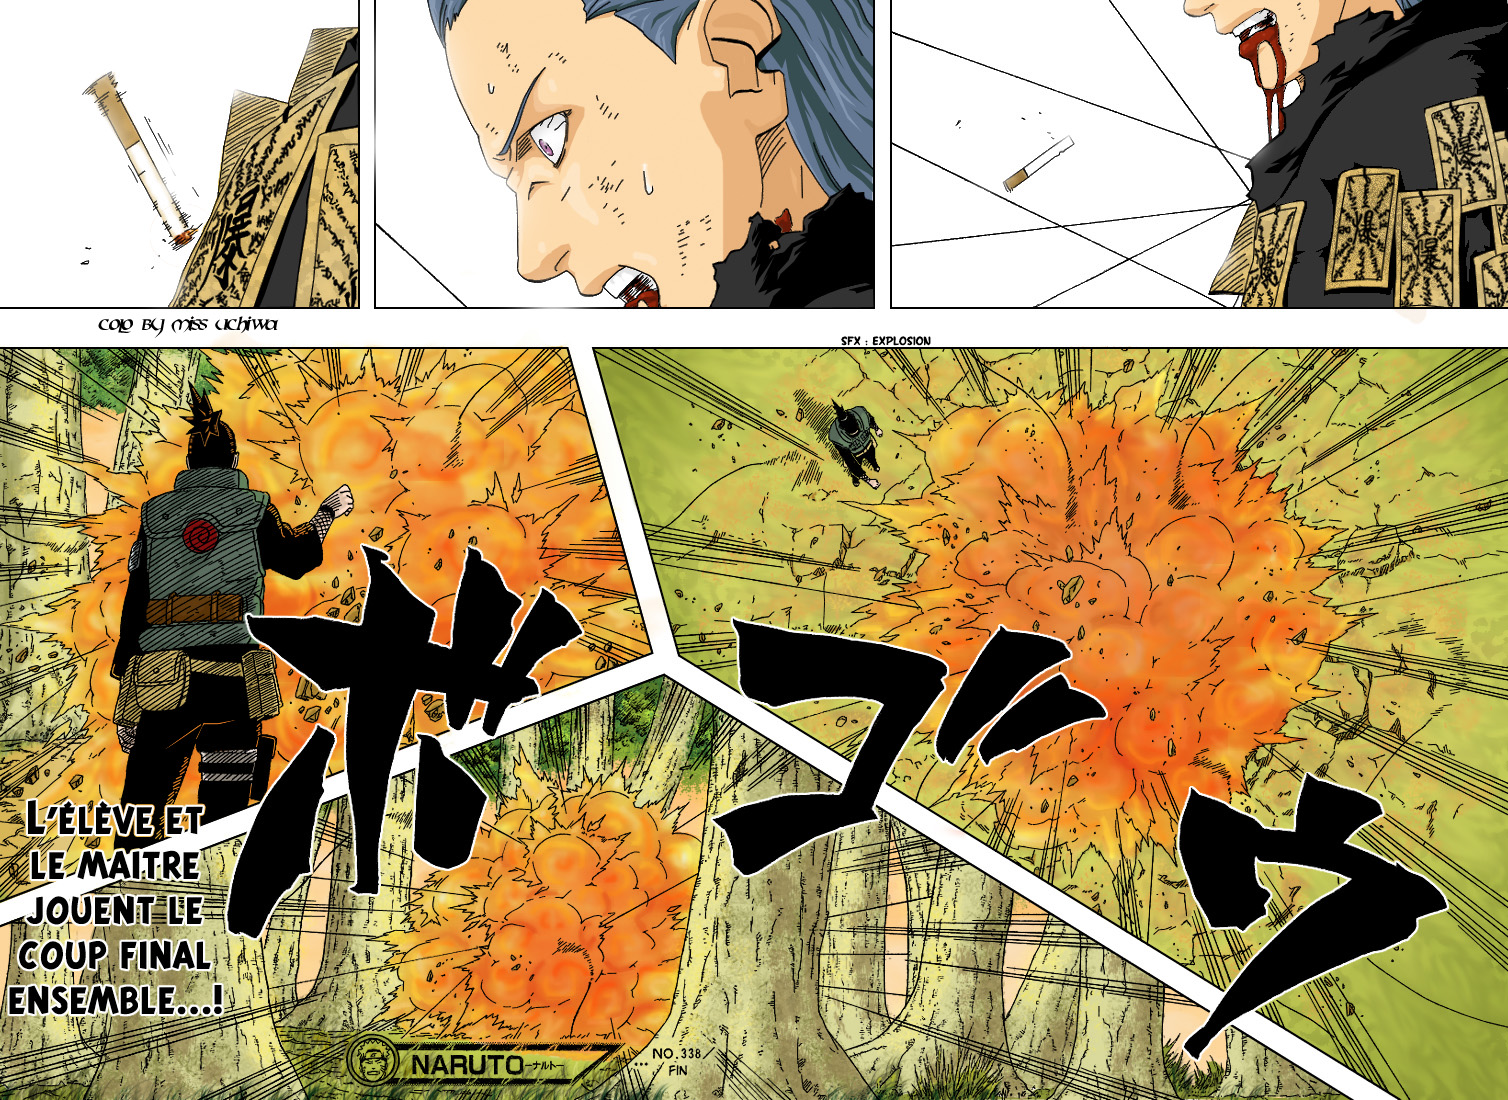 Naruto chapitre 338 colorisé - Page 15